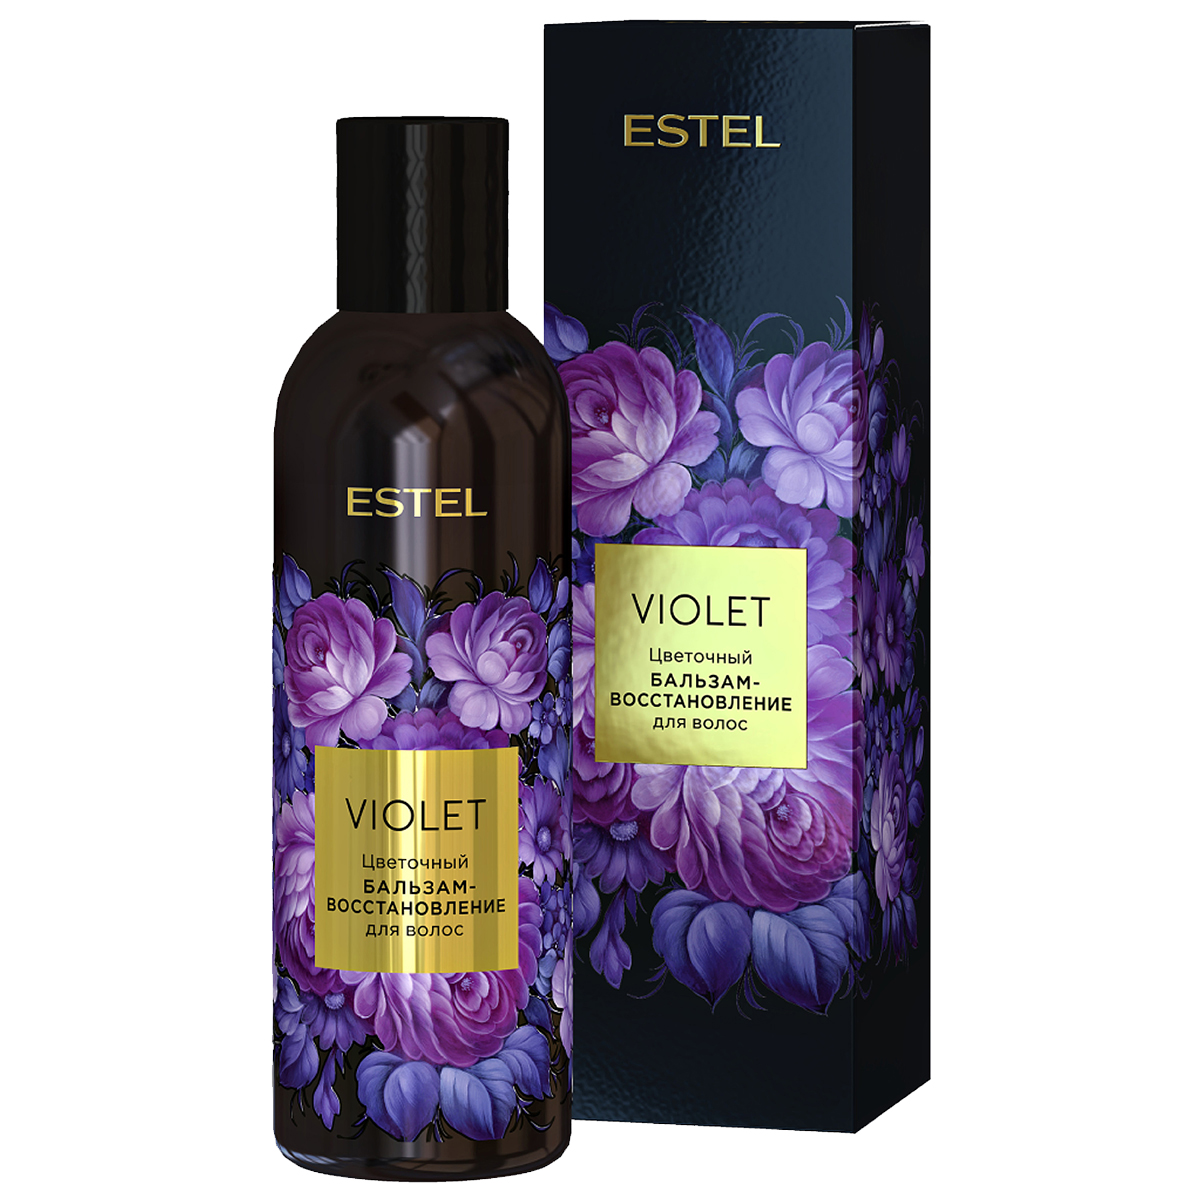 бальзам-восстановление ESTEL VIOLET для волос цветочный 200 мл petal fresh шампунь для волос с экстрактом лаванды